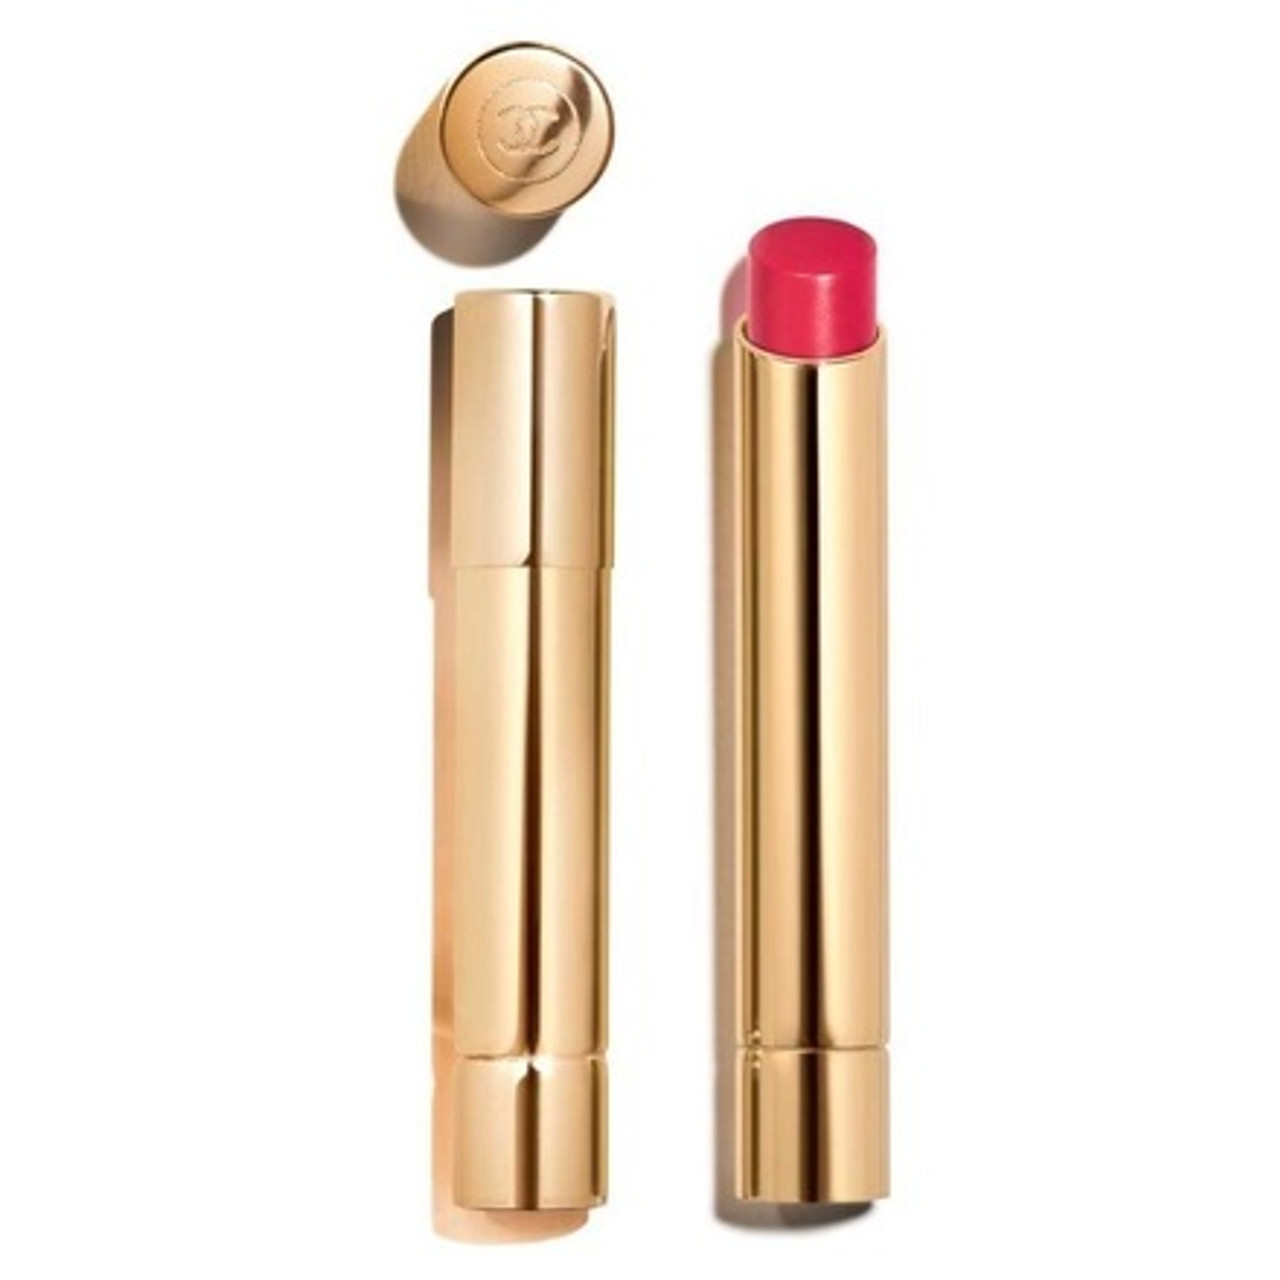 Chanel Rouge Allure L'Extrait Lip Colour • Lipstick Review & Swatches